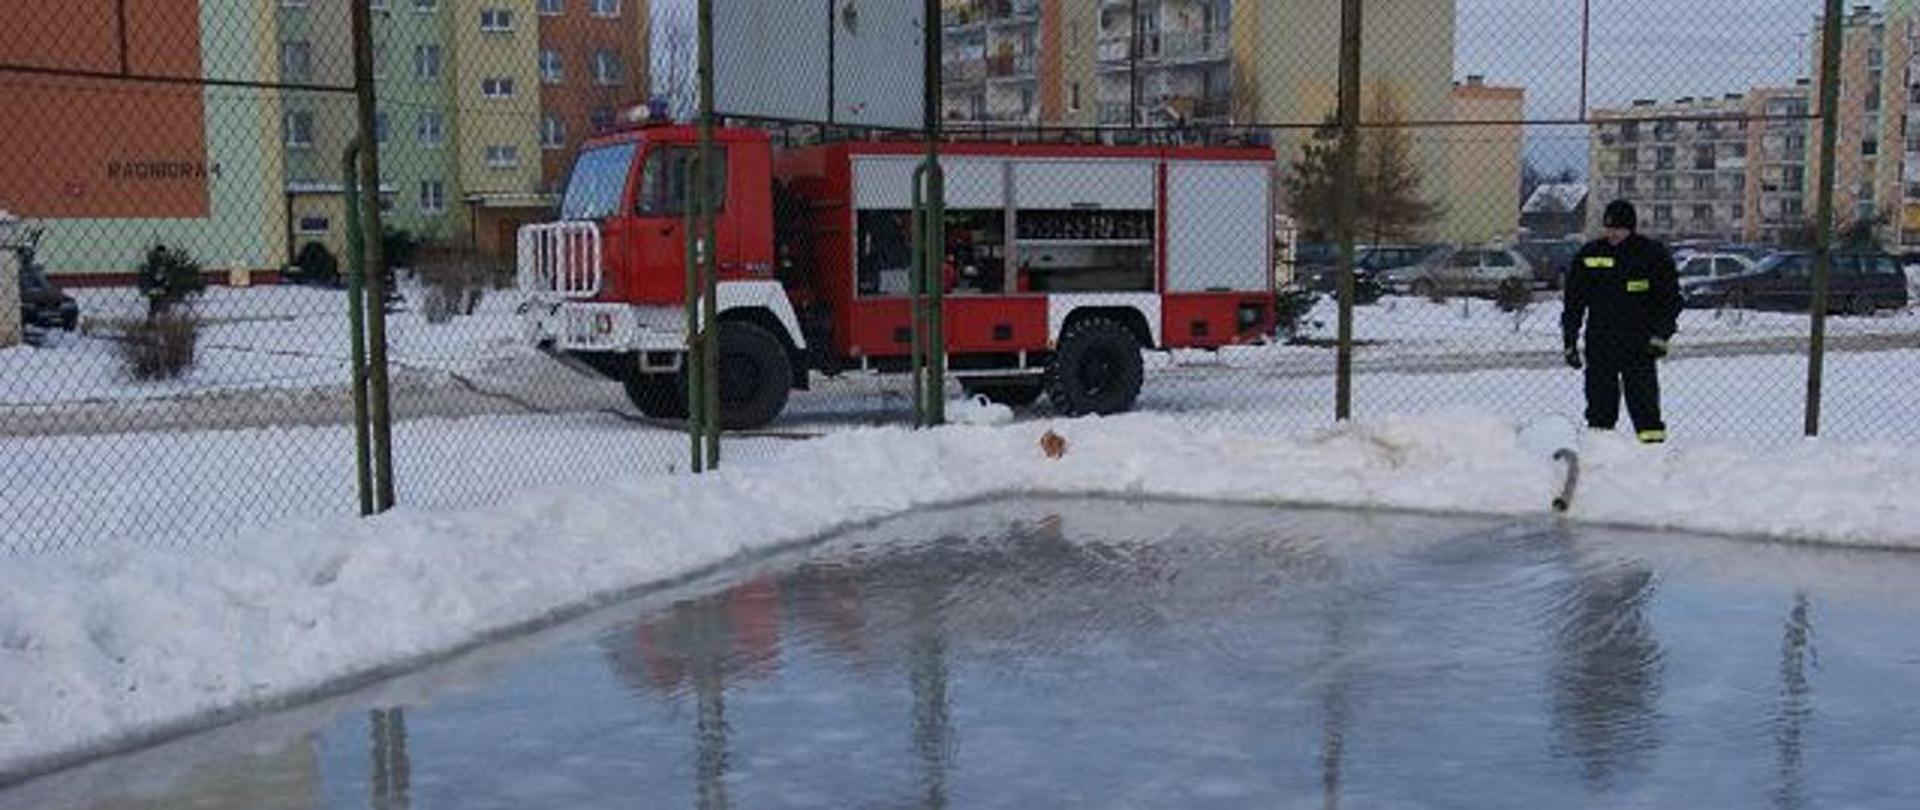 Zdjęcie przedstawia samochód ratowniczo-gaśniczy oraz strażaka w umundurowaniu koszarowym podczas czynności gospodarczych związanych z przygotowywaniem lodowiska dla dzieci.